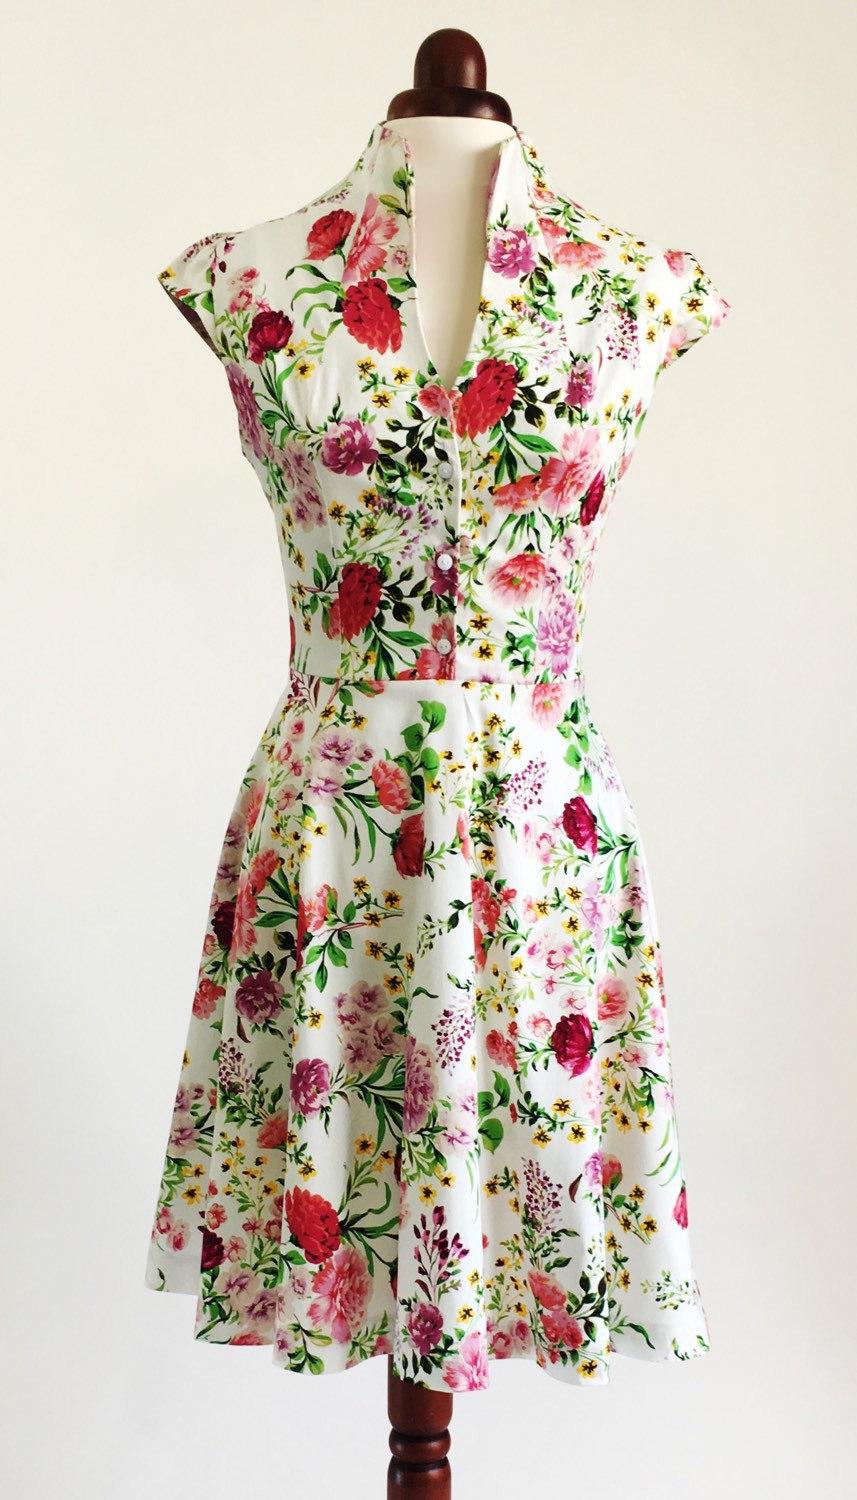 زفاف - Spring flower dress, floral dress, summer dress, vintage style dress, mid-length dress, cotton dress, 50s dress, garden party dress, SS16